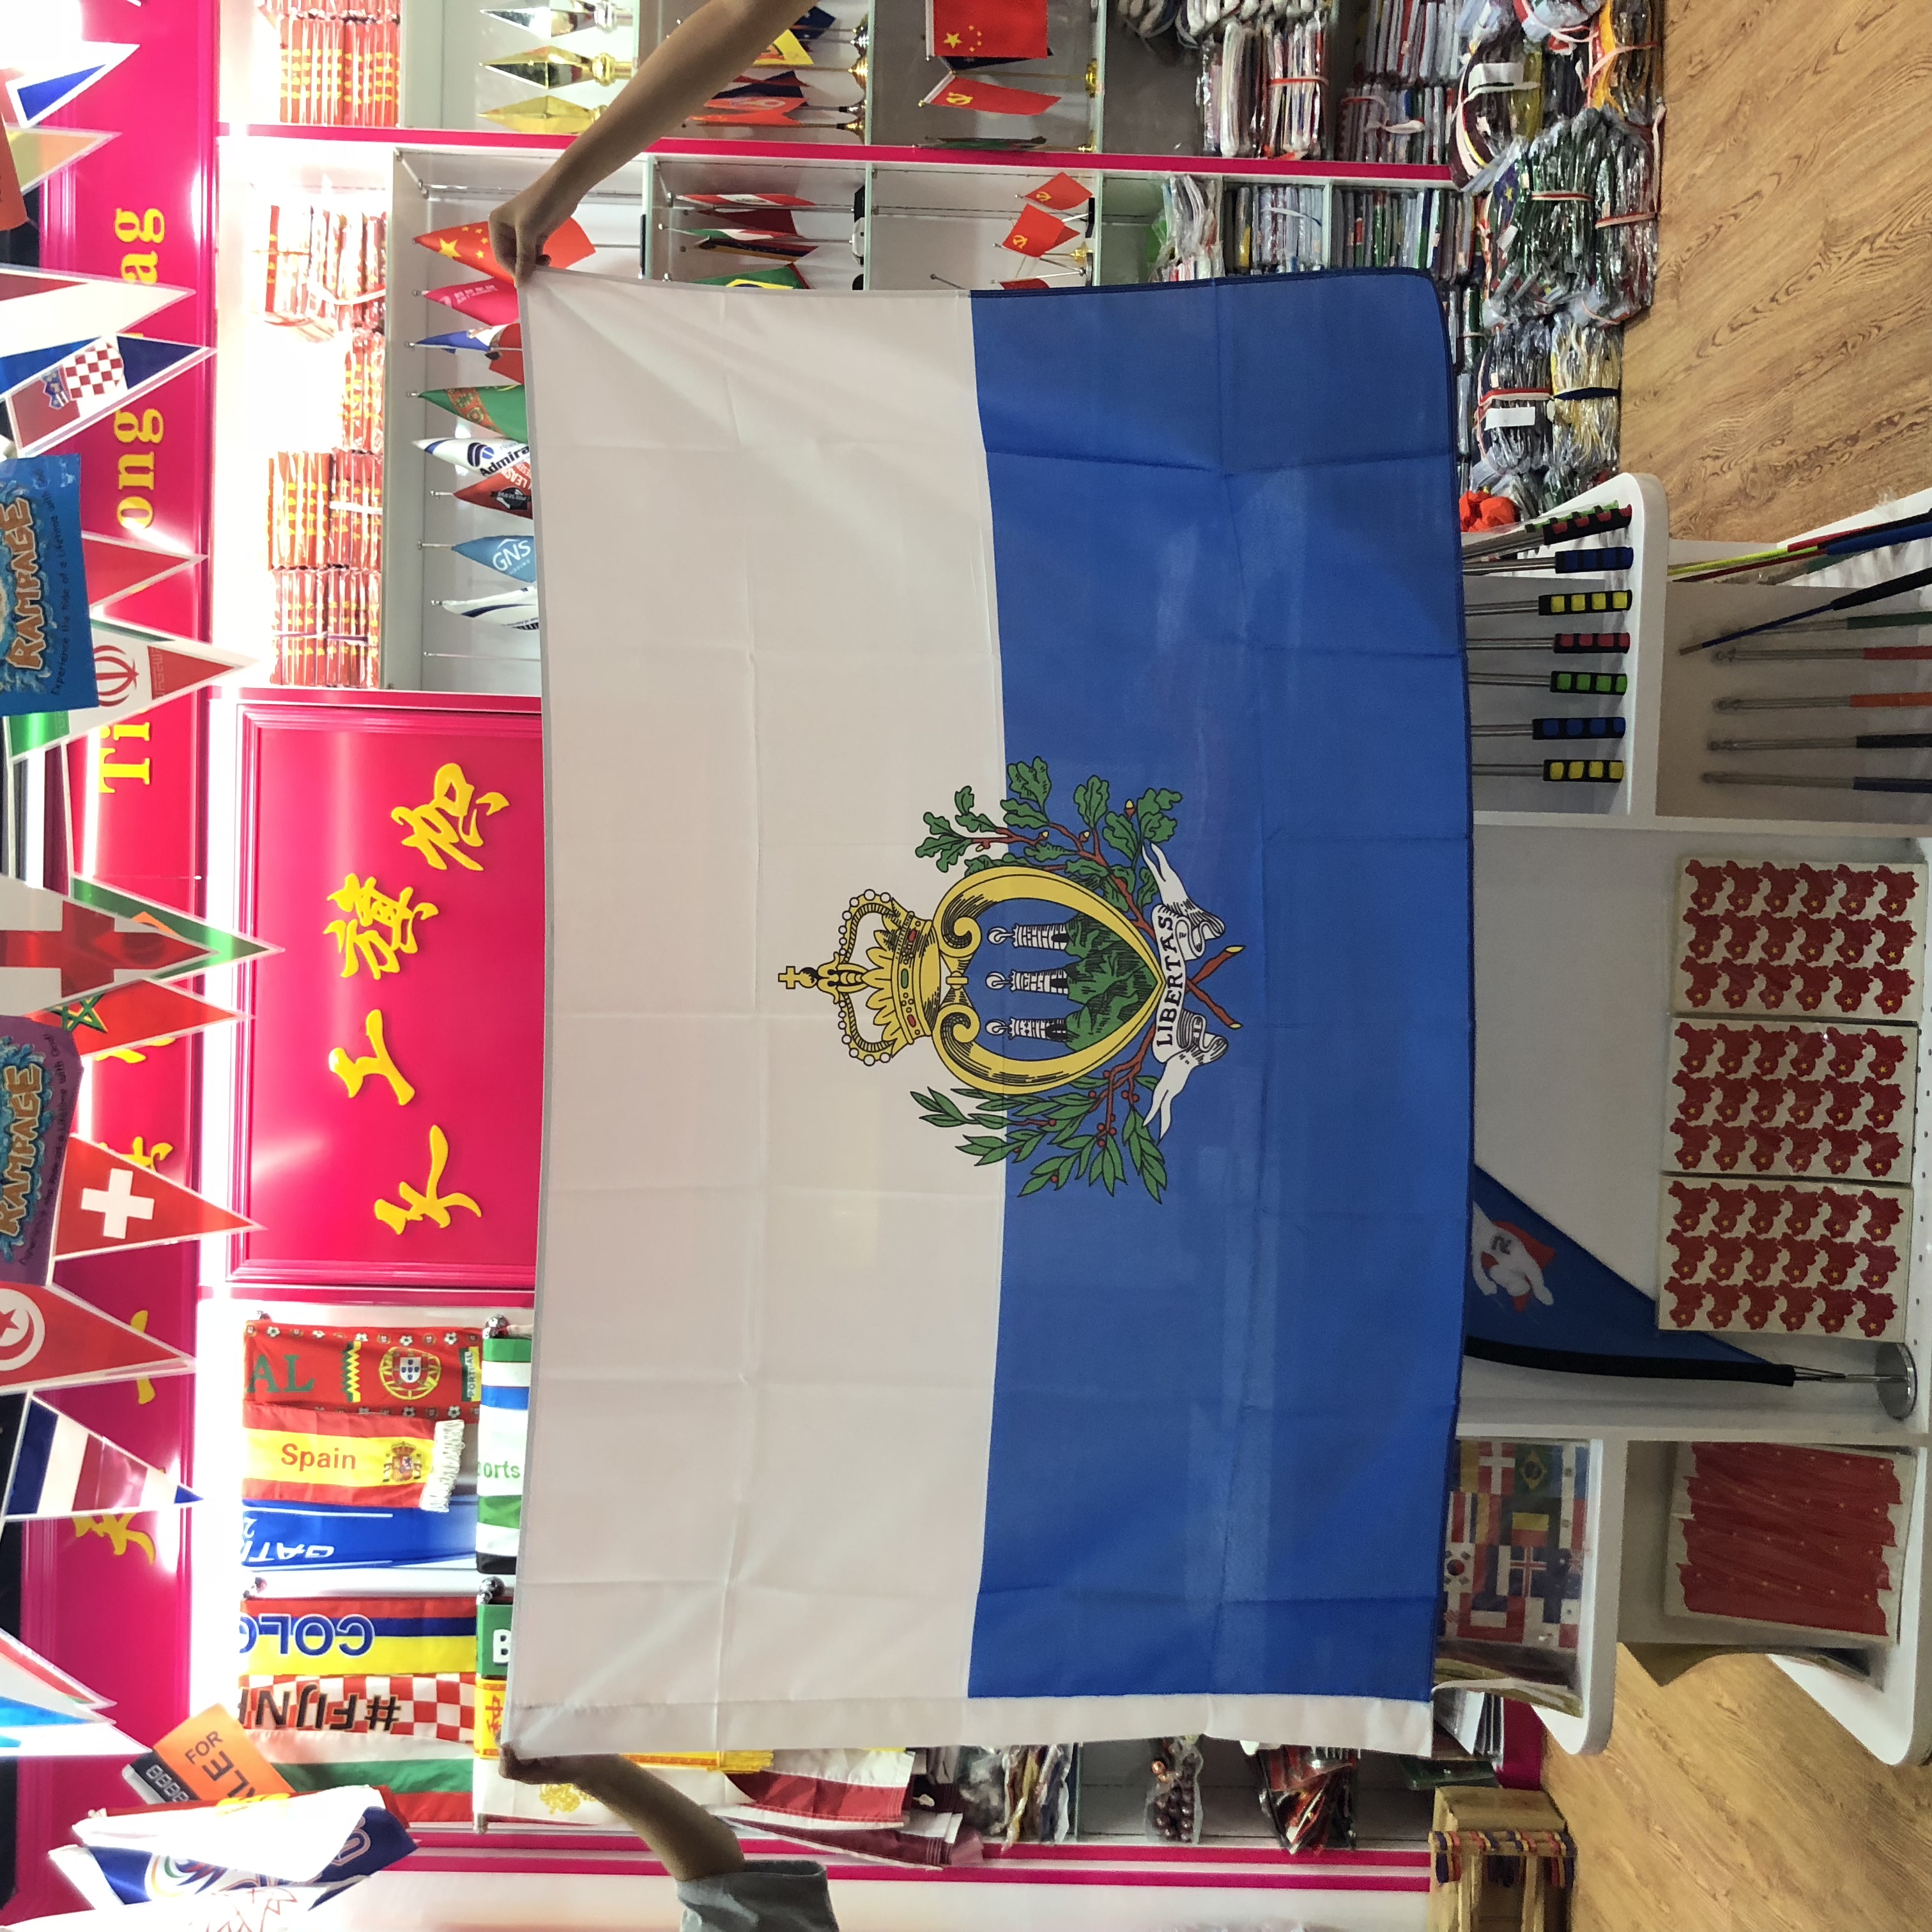 圣马力诺的国旗图片